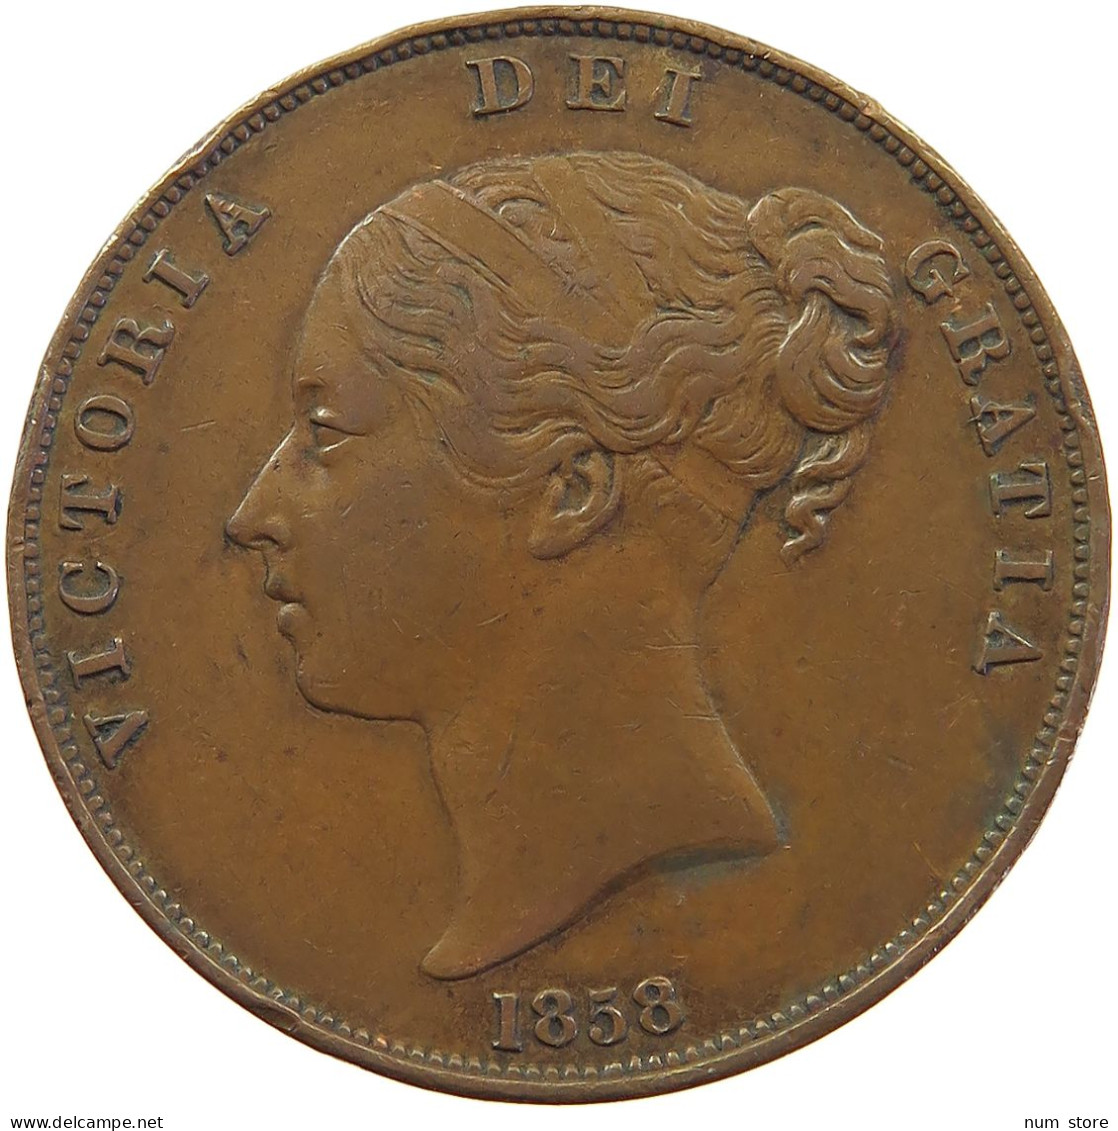 GREAT BRITAIN HALFPENNY 1858 Victoria 1837-1901 #sm05 0317 - C. 1/2 Penny